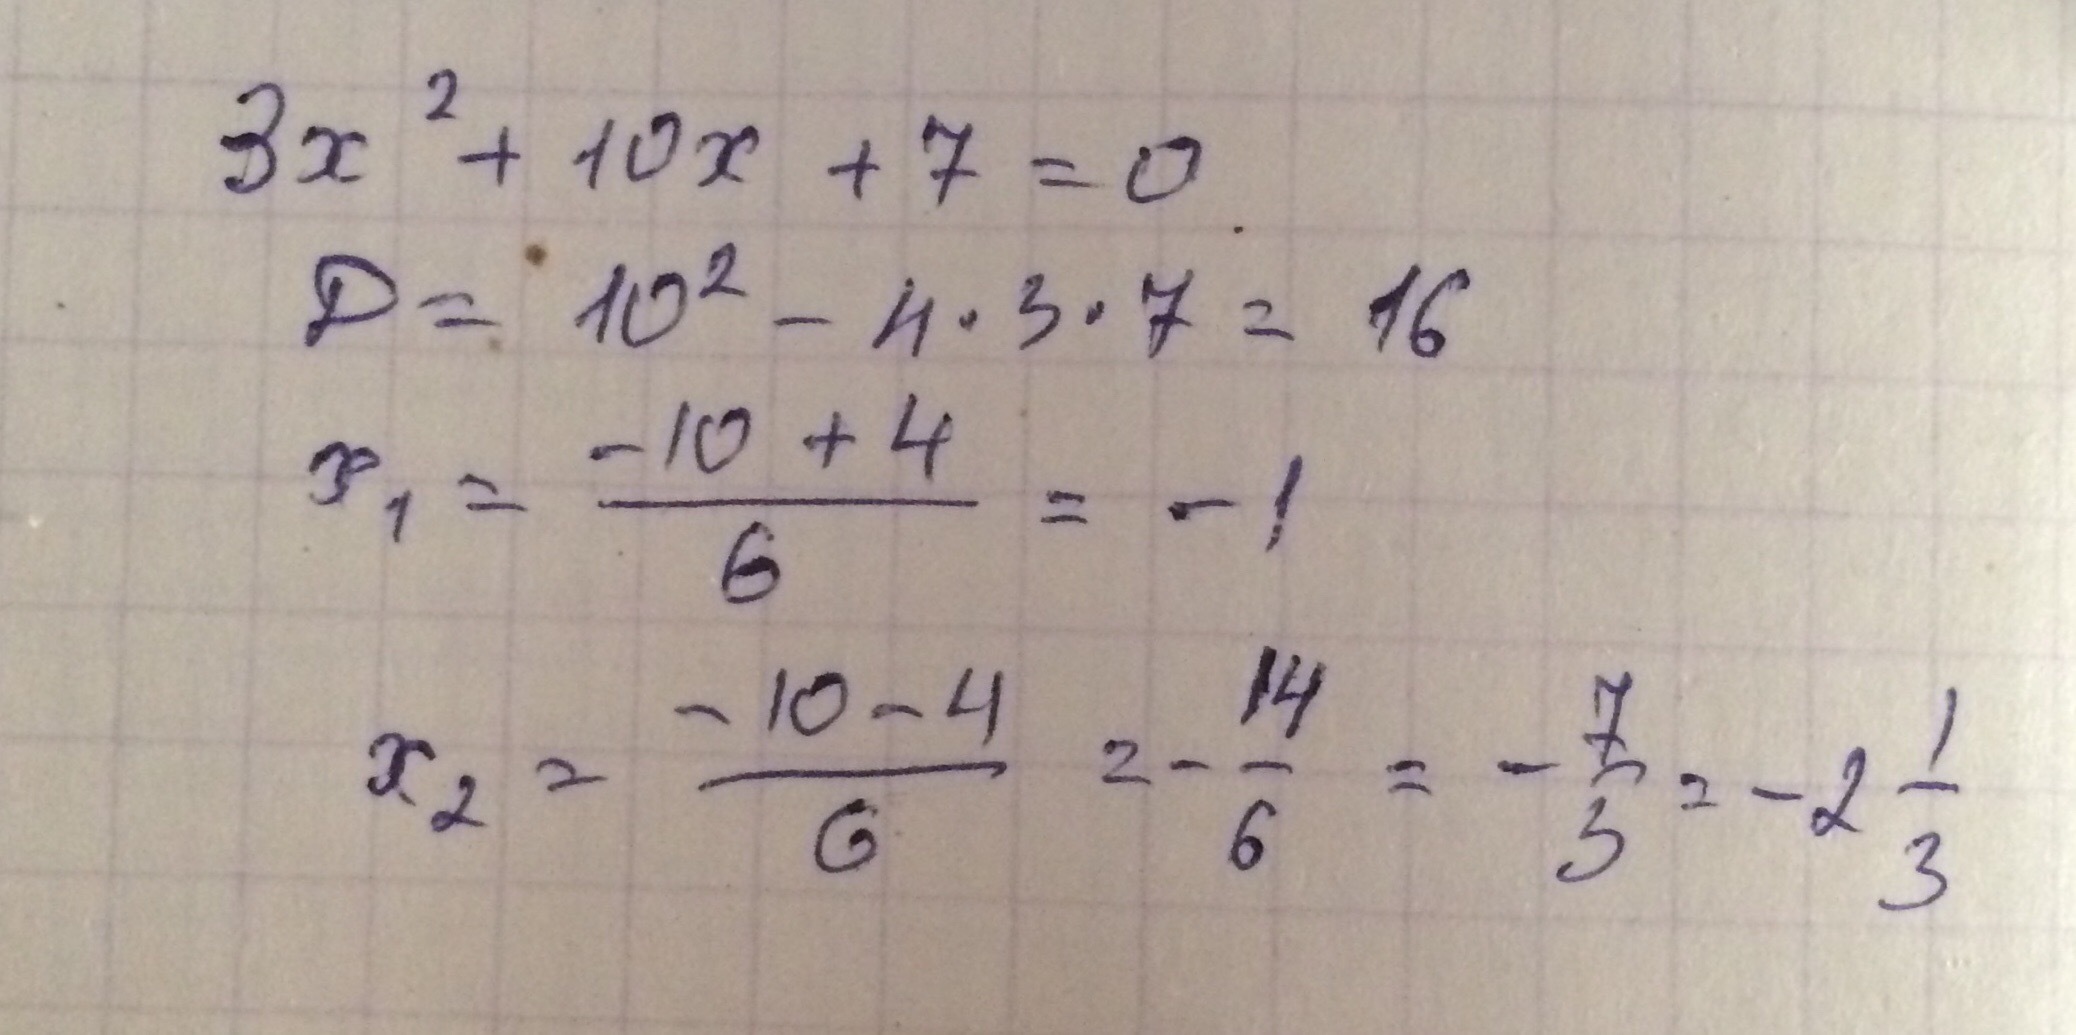 10 икс плюс 7 равно 3. X В квадрате плюс 3x равно 4. X В квадрате равно 3. Минус 3 в квадрате равно. Х В квадрате равно 3х.